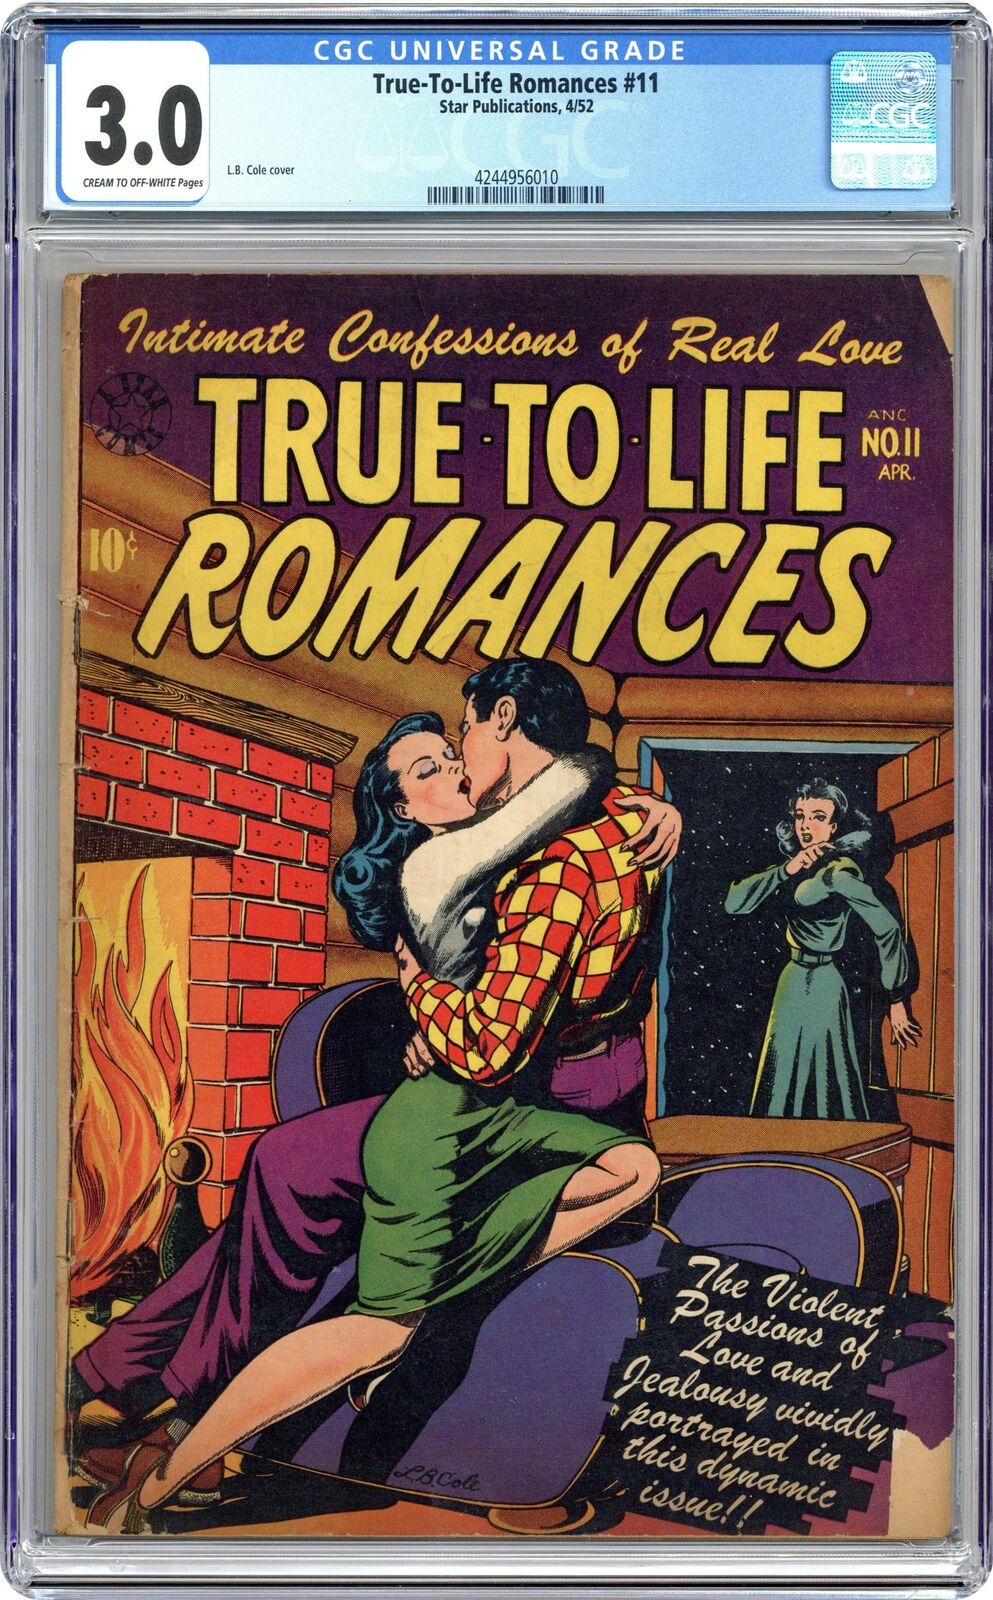 True to Life Romances #11 CGC 3.0 1952 4244956010